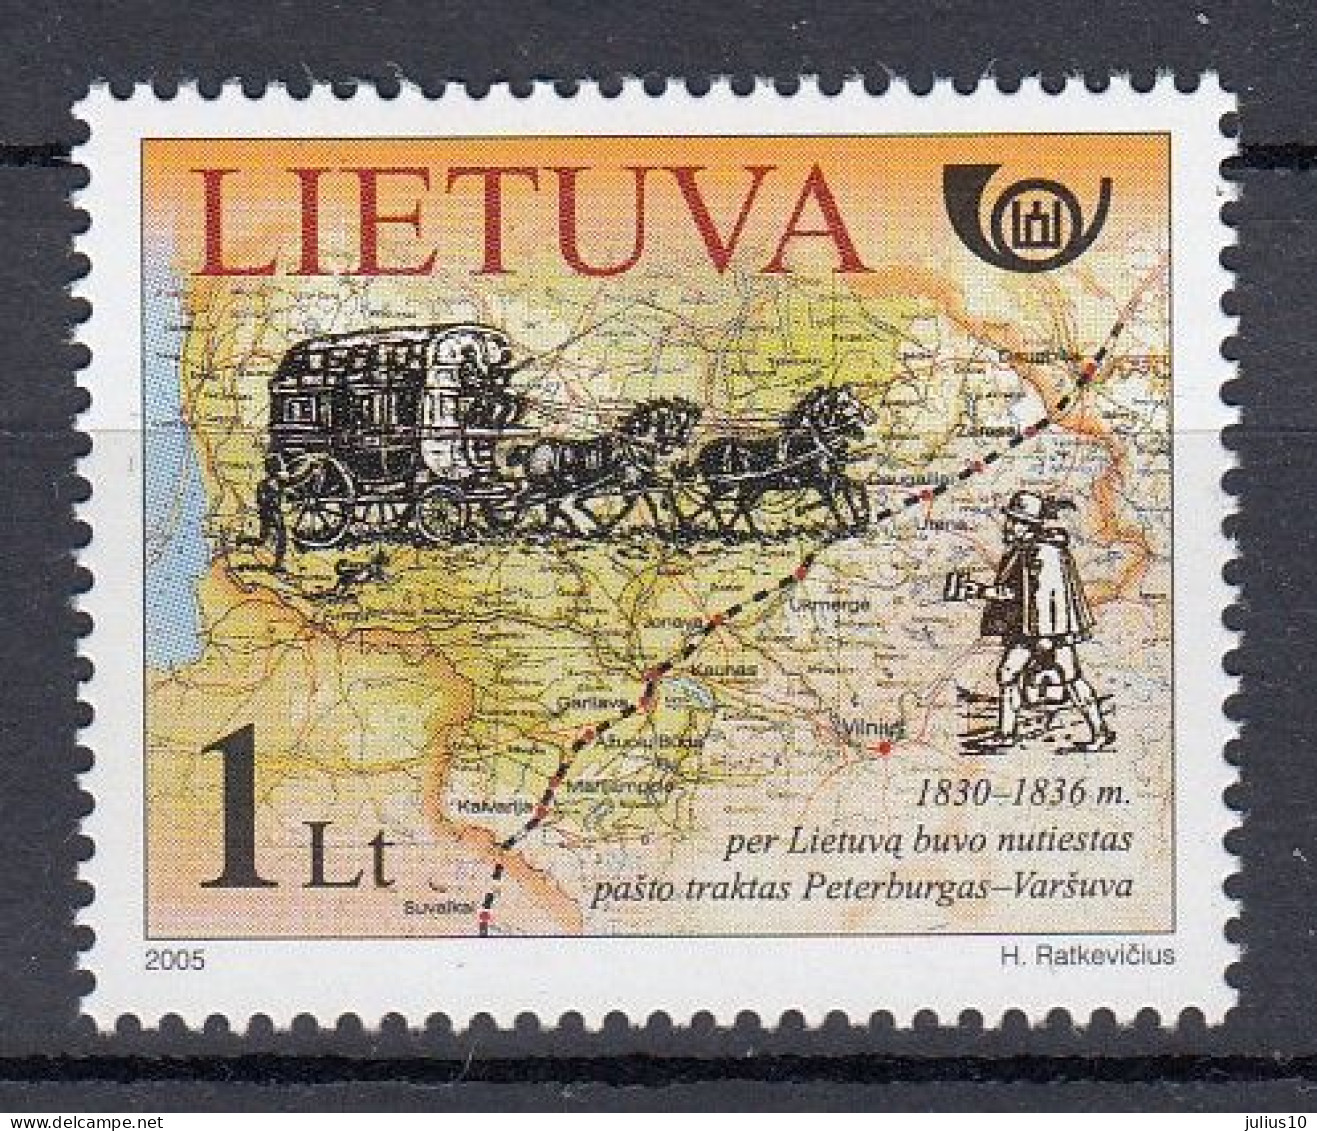 LITHUANIA 2005 History Map MNH(**) Mi 888 #Lt974 - Lituanie